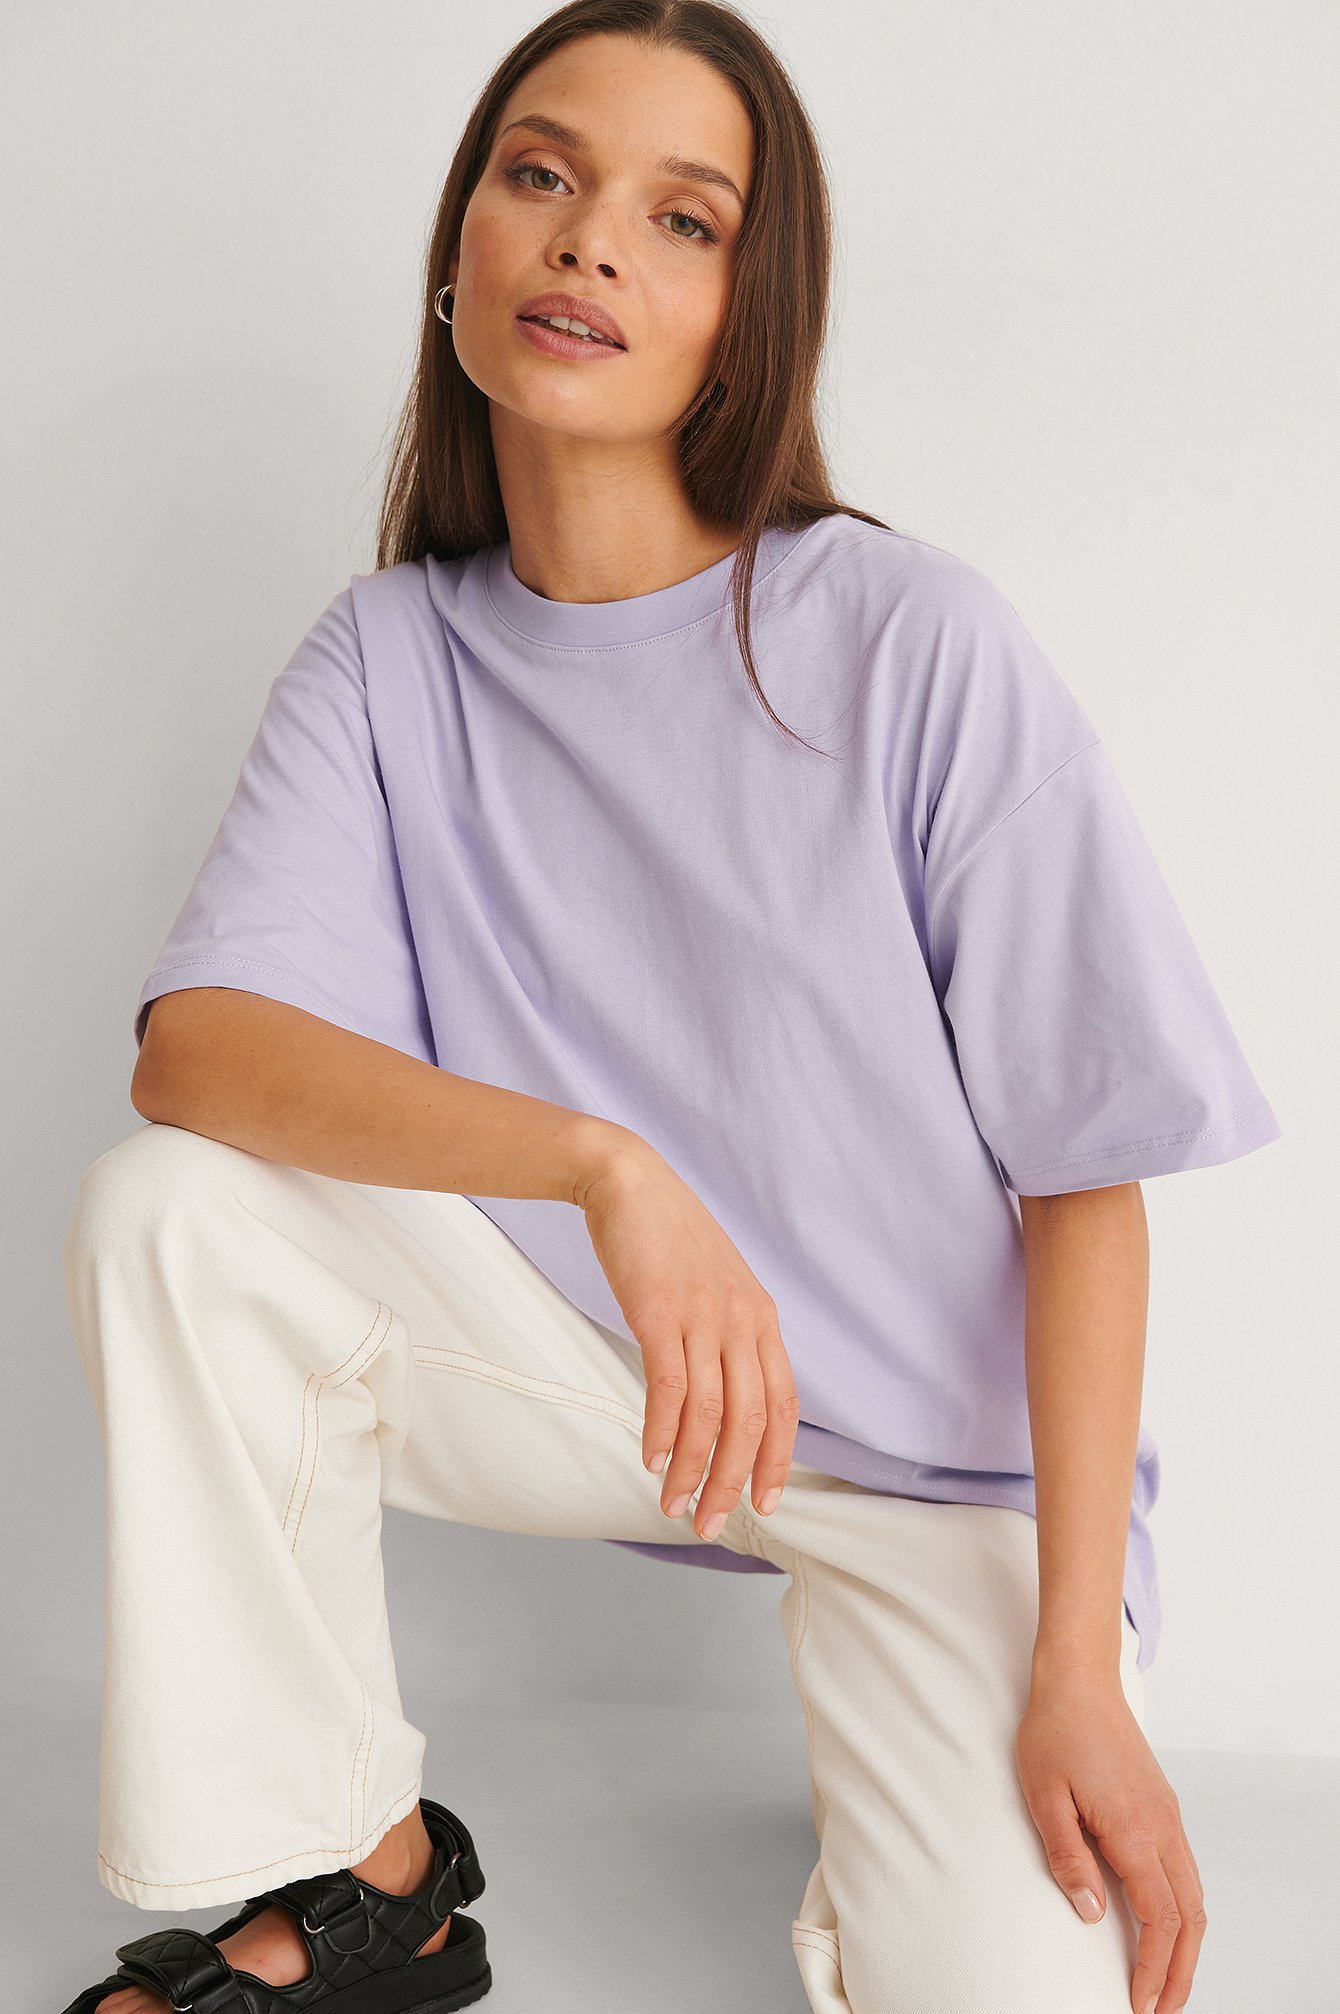 Lilac Luźny T-shirt z okrągłym dekoltem, z tkaniny organicznej